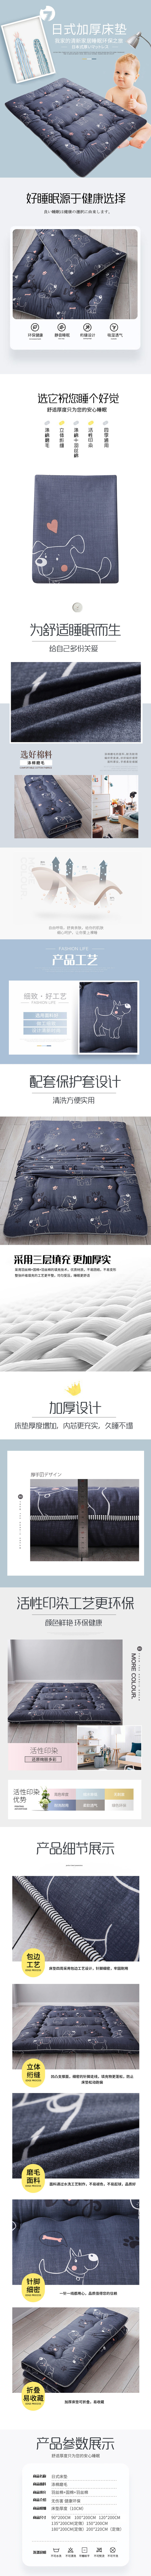 淘宝美工小椅日式加厚保暖榻榻米床垫软垫可折叠睡垫懒人床褥子学生打地铺作品